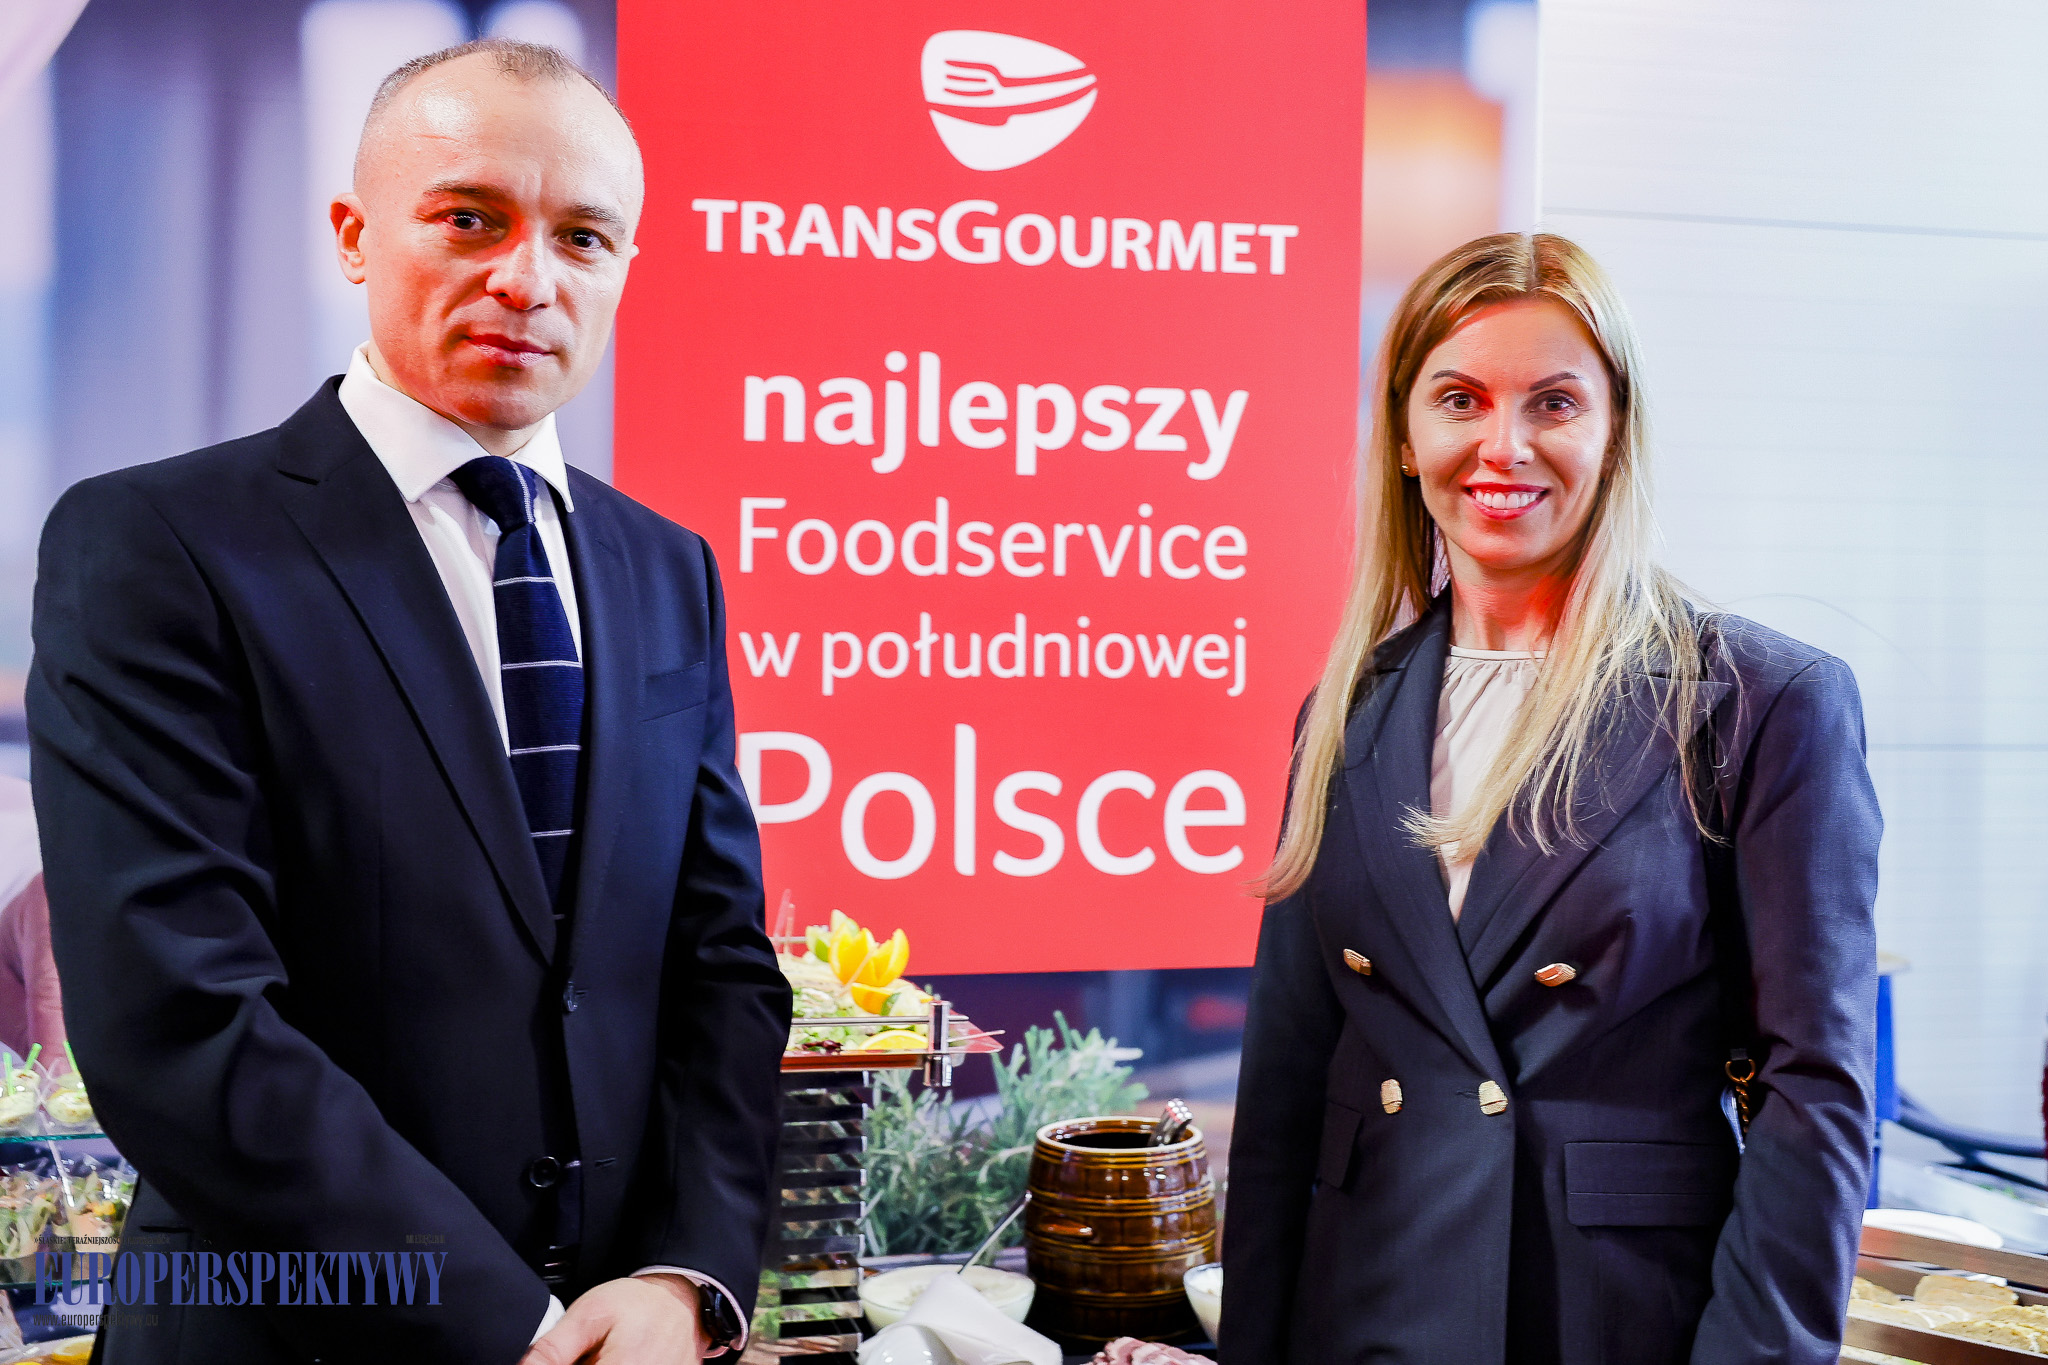 Europerspektywy Otwarcie Transgourmet Foodservice w Gliwicach